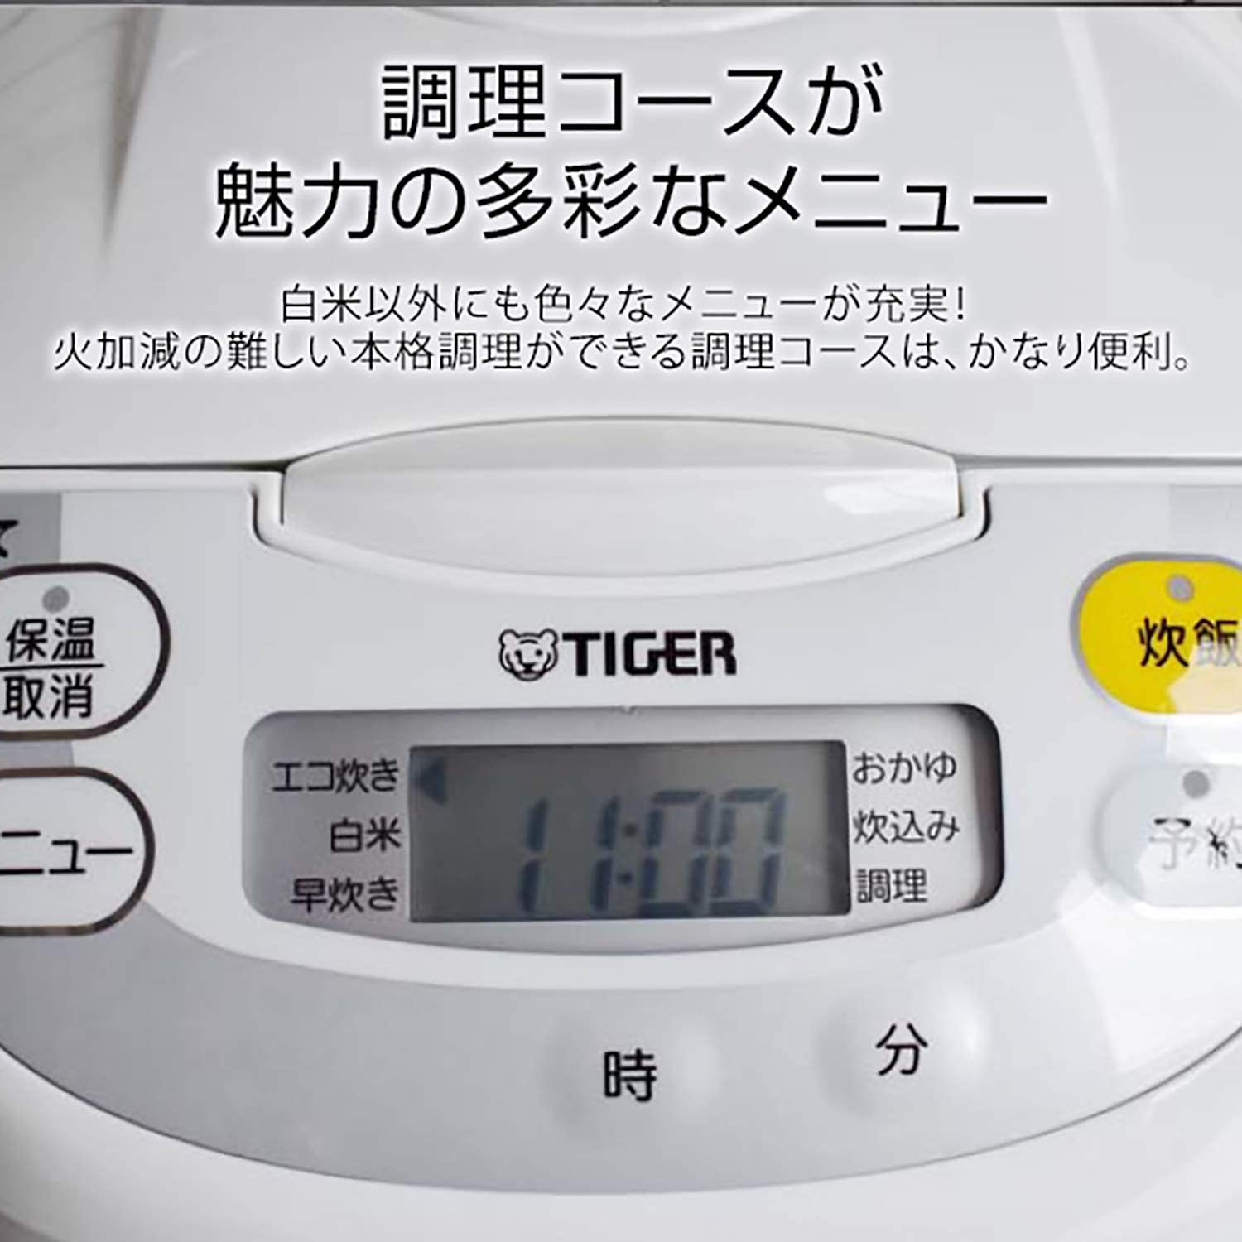 タイガー魔法瓶(TIGER) マイコン炊飯ジャー G181の商品画像3 